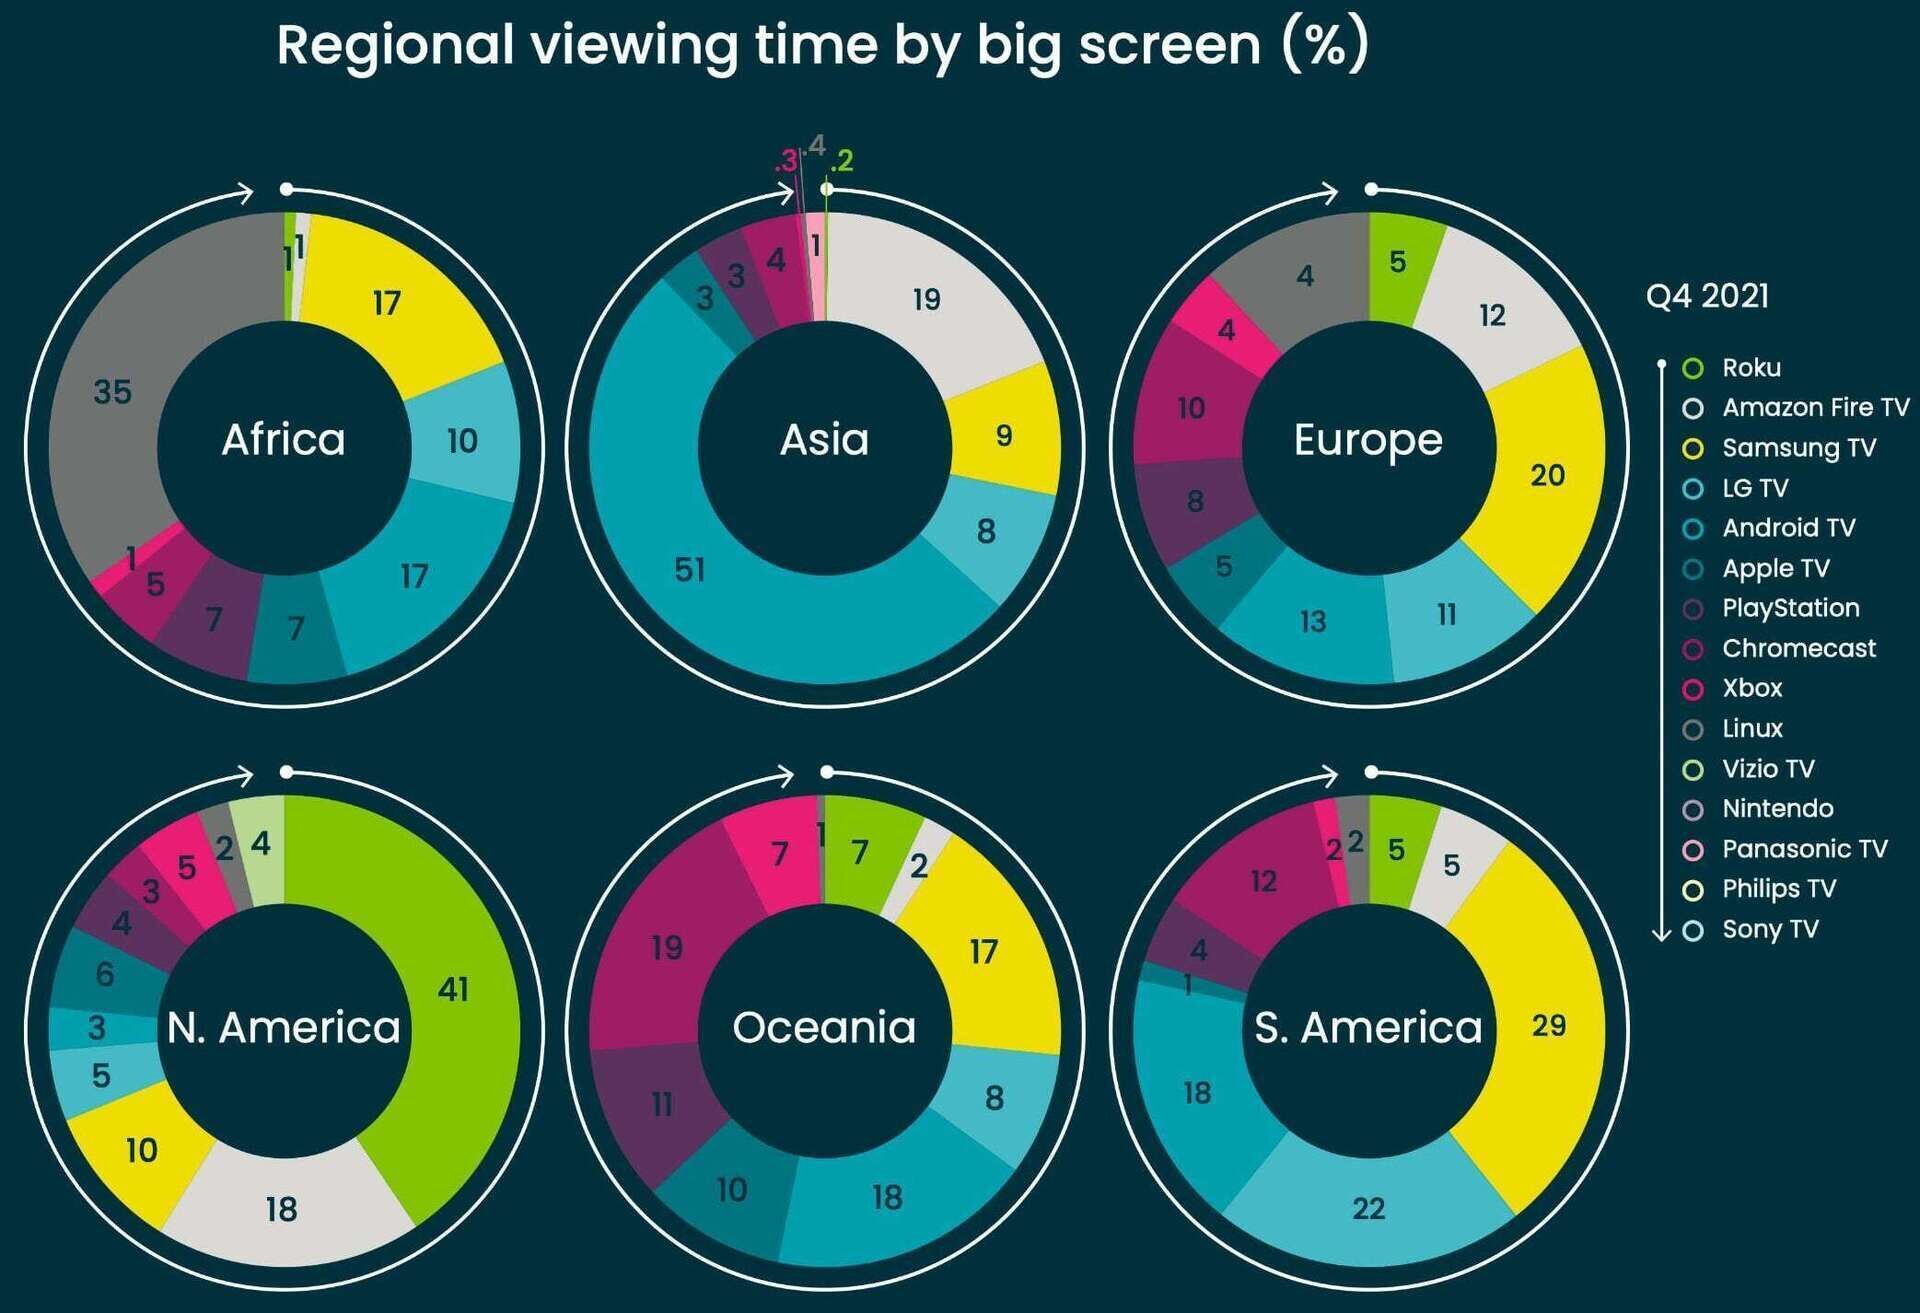 Статистика Conviva: в 2021 году телезрители все чаще выбирали Smart TV на больших экранах